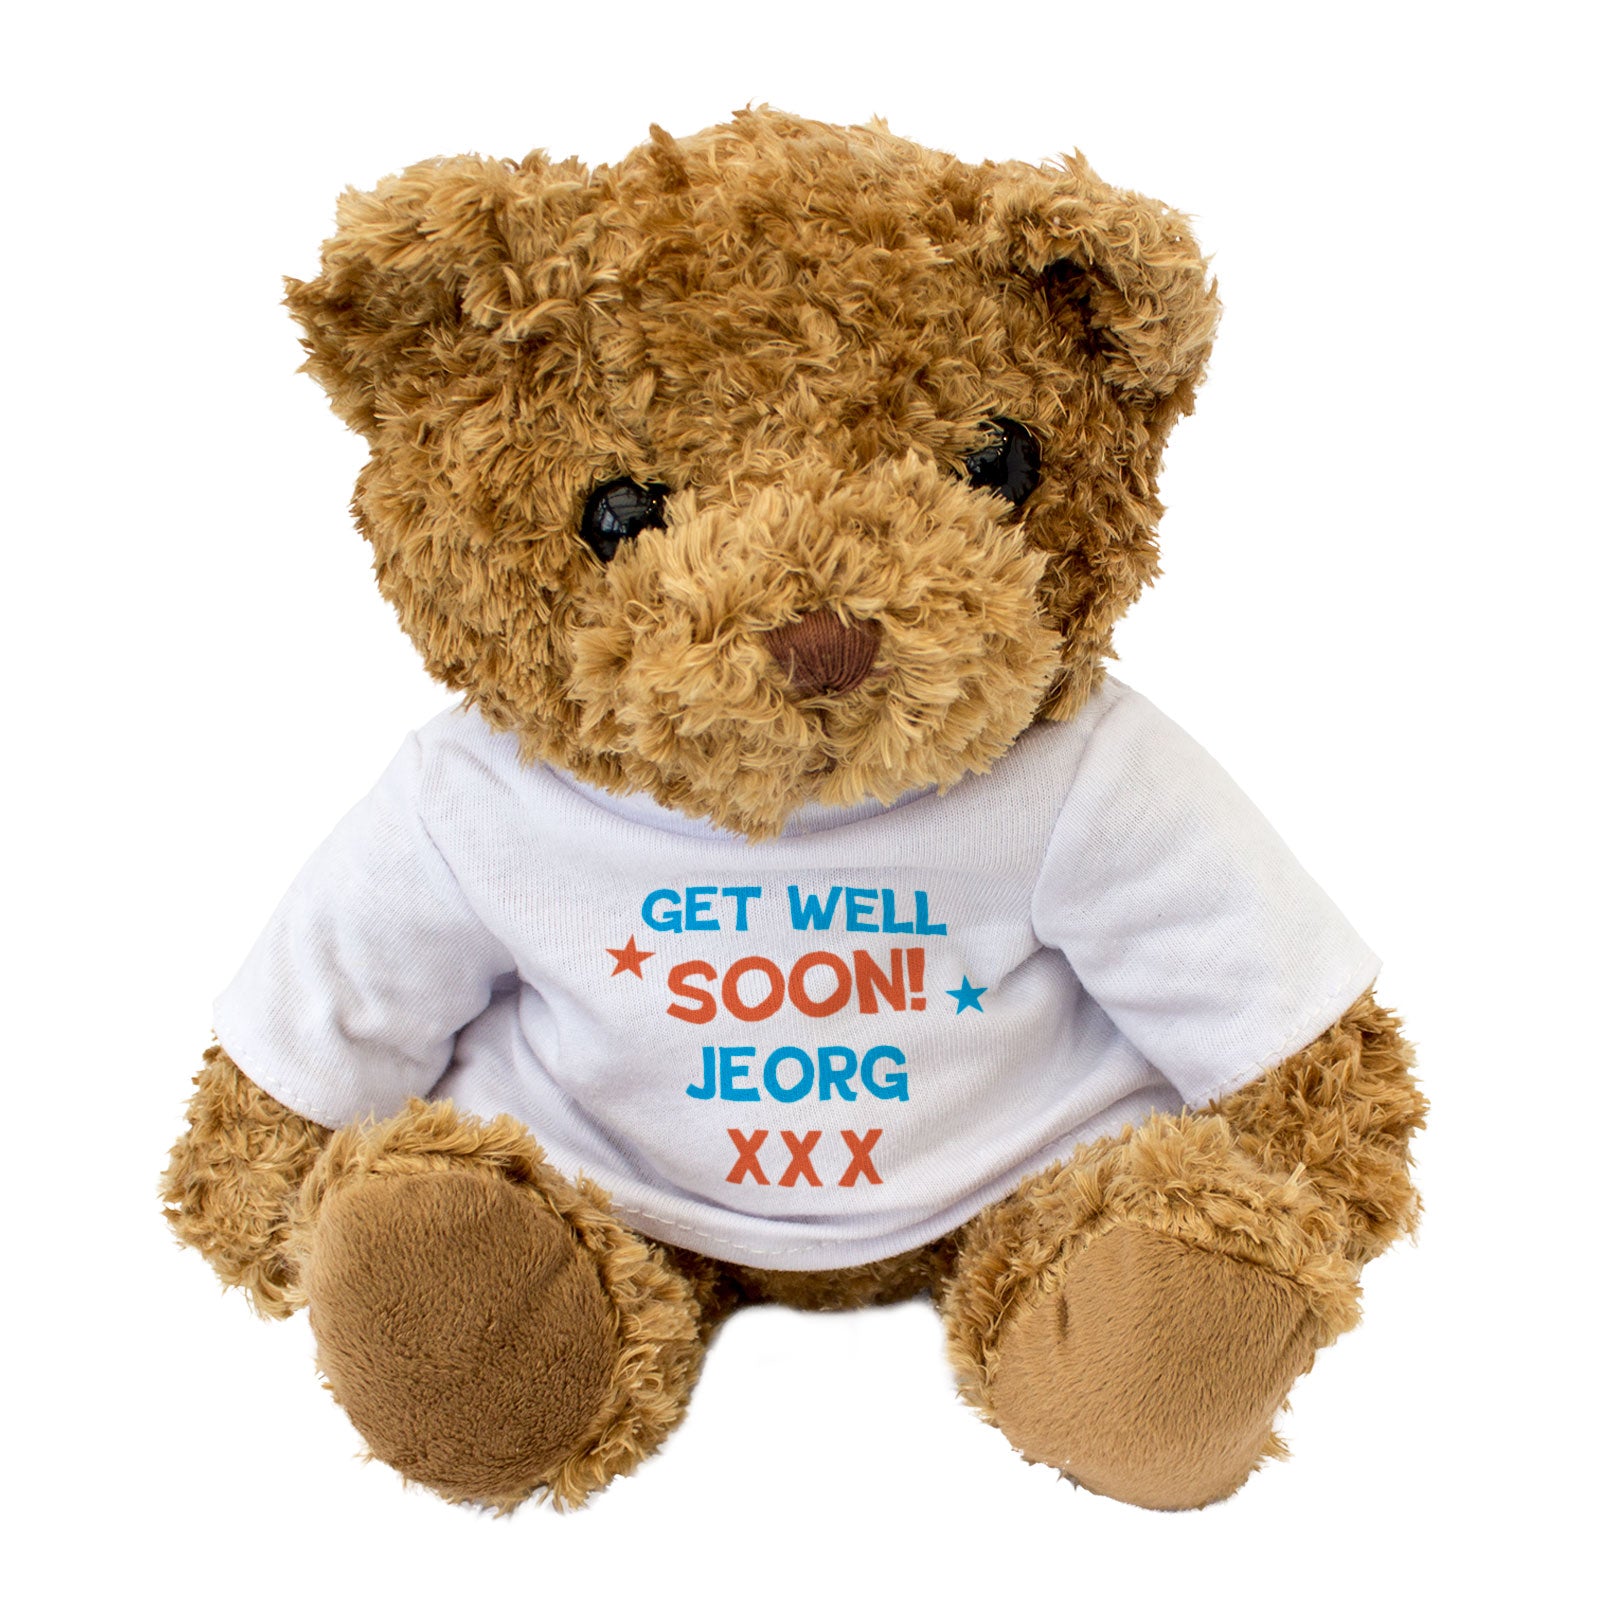 Get Well Soon Jeorg - Teddy Bear